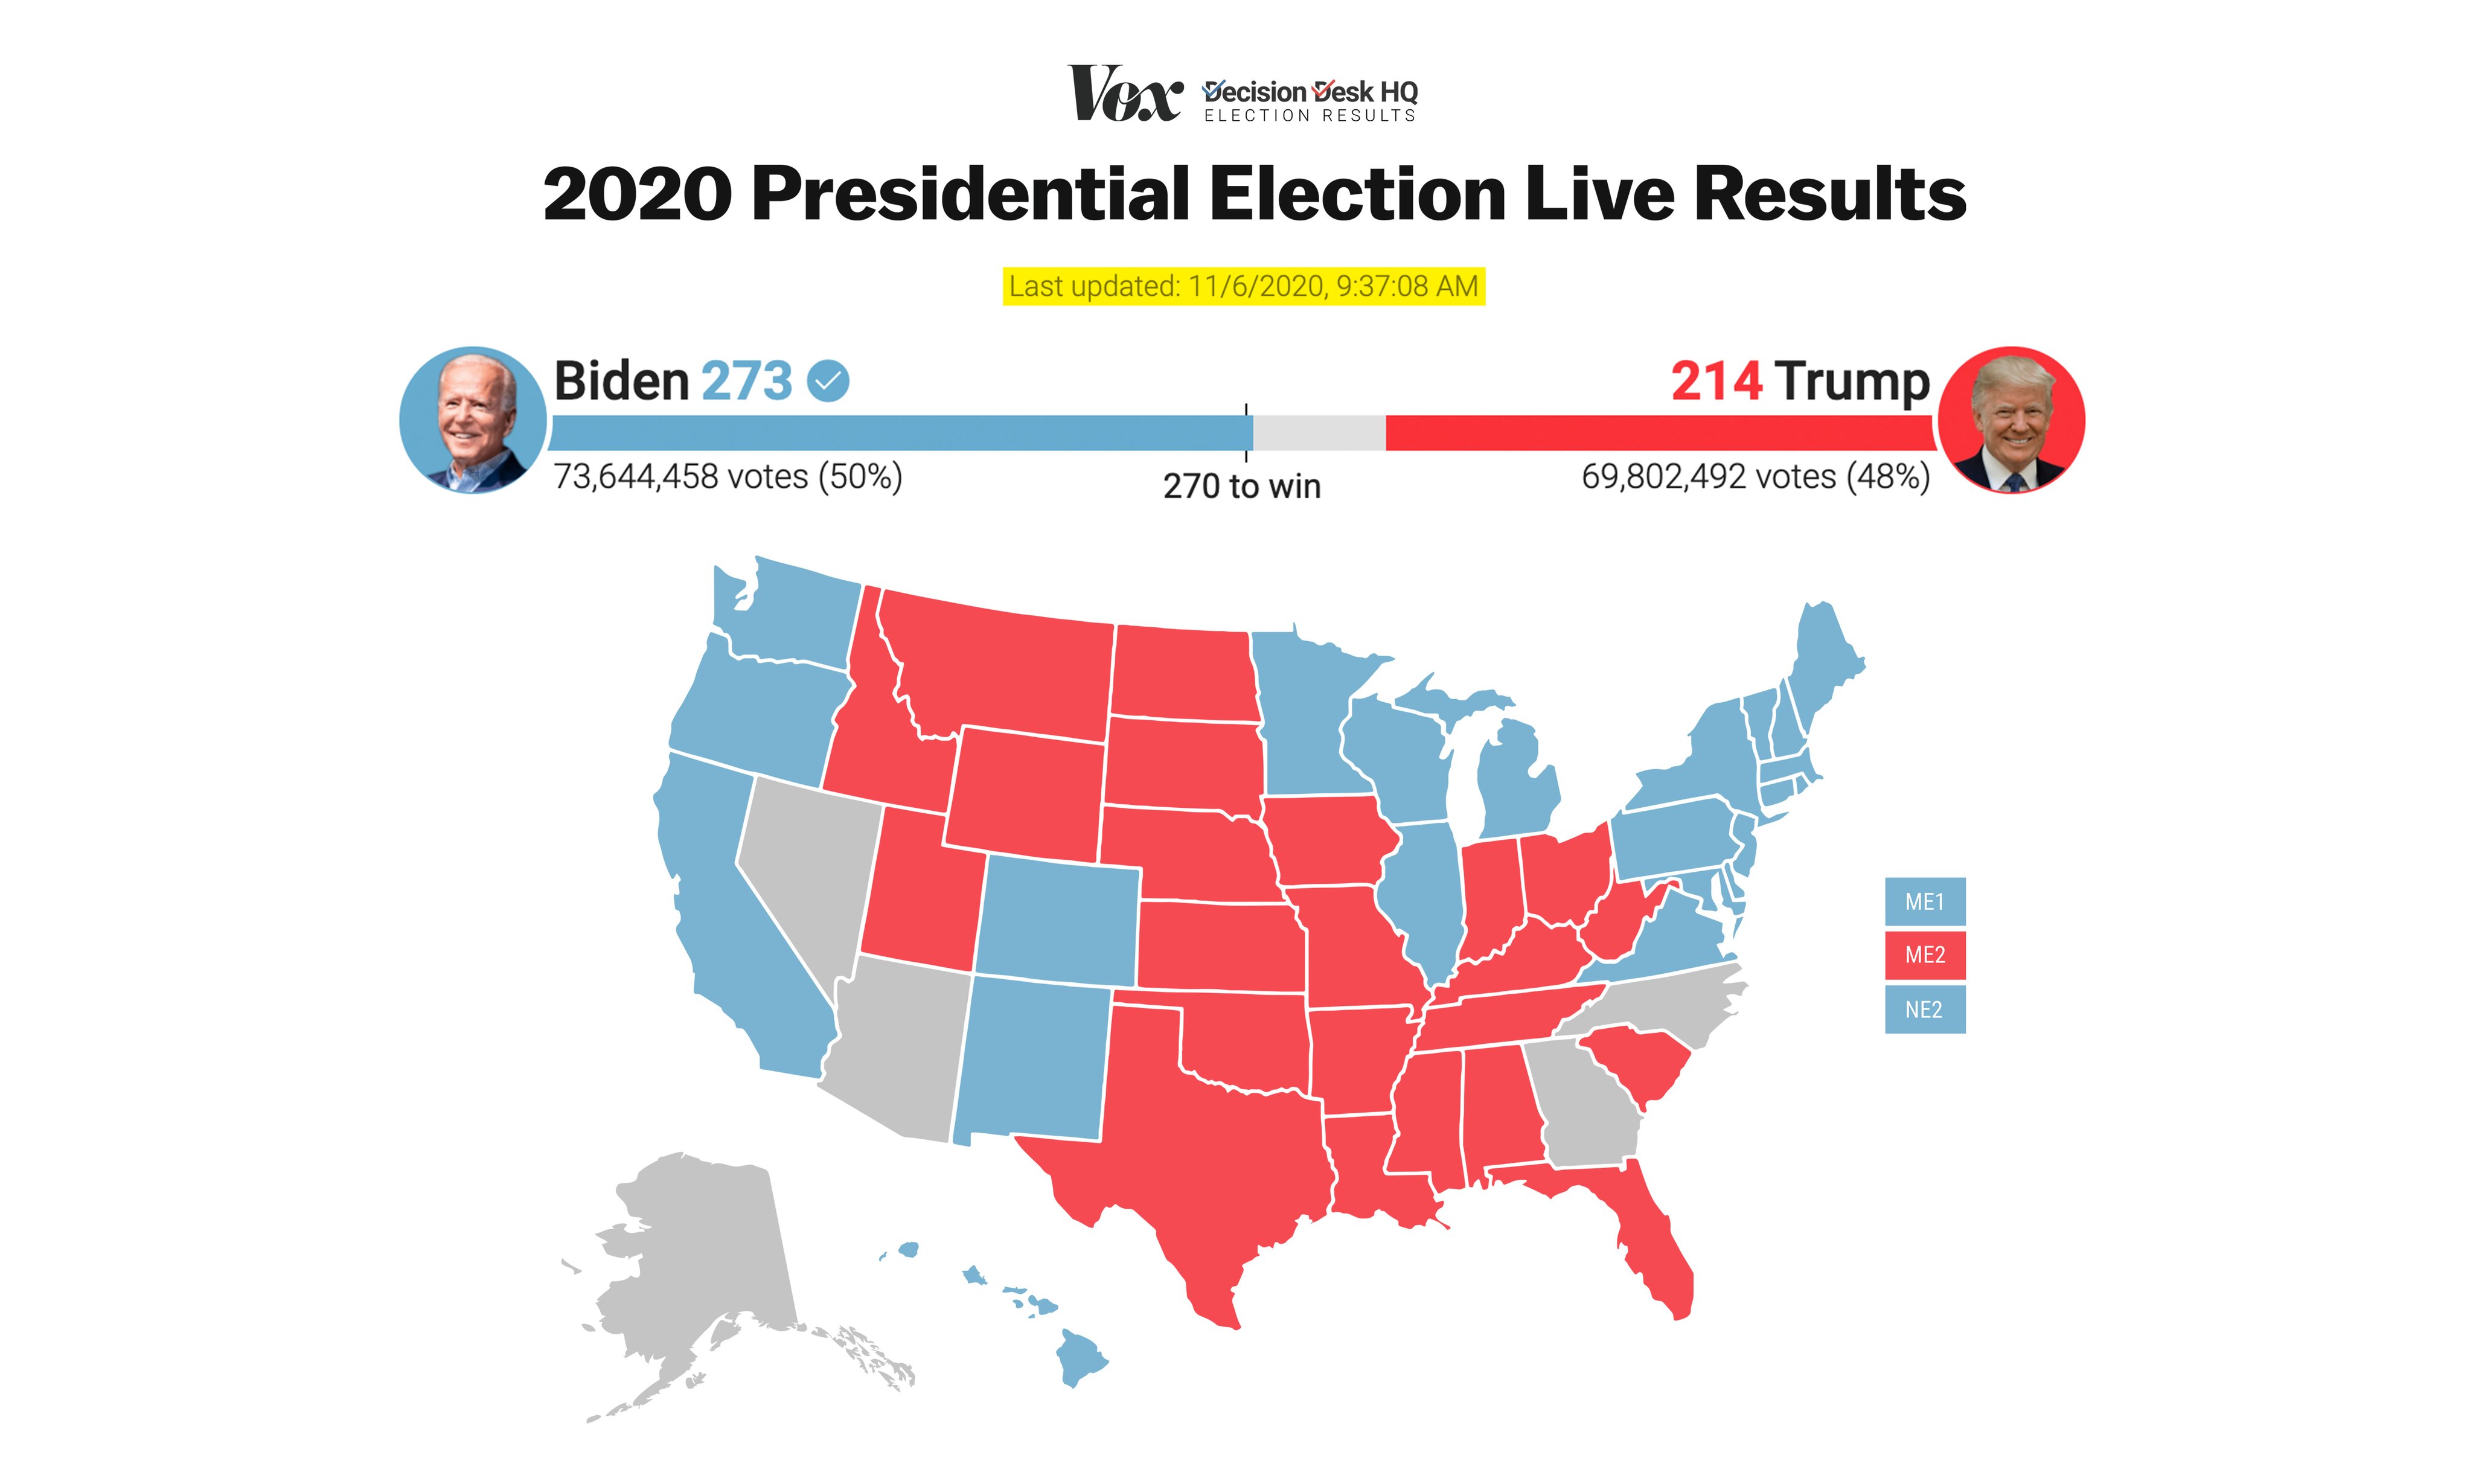 2020 Presidential Election Live Results: Joe Biden has 273 electoral votes, Donald Trump has 214 electoral votes.